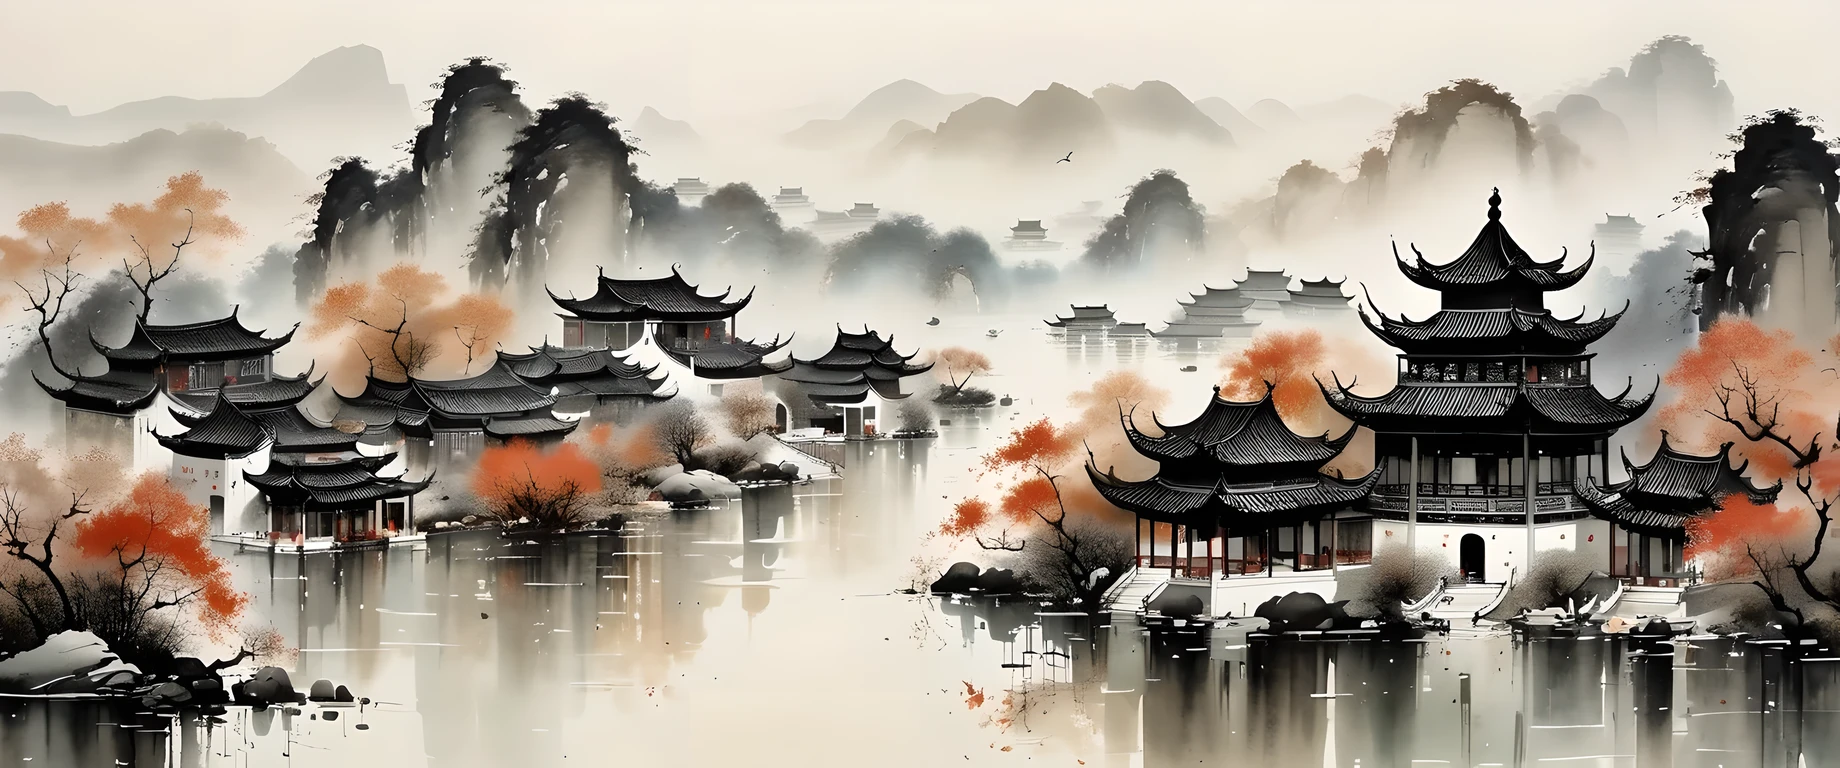 精巧な水墨画, 現実的, 詳細な中国建築, 呉関中スタイル, 色あせた色

